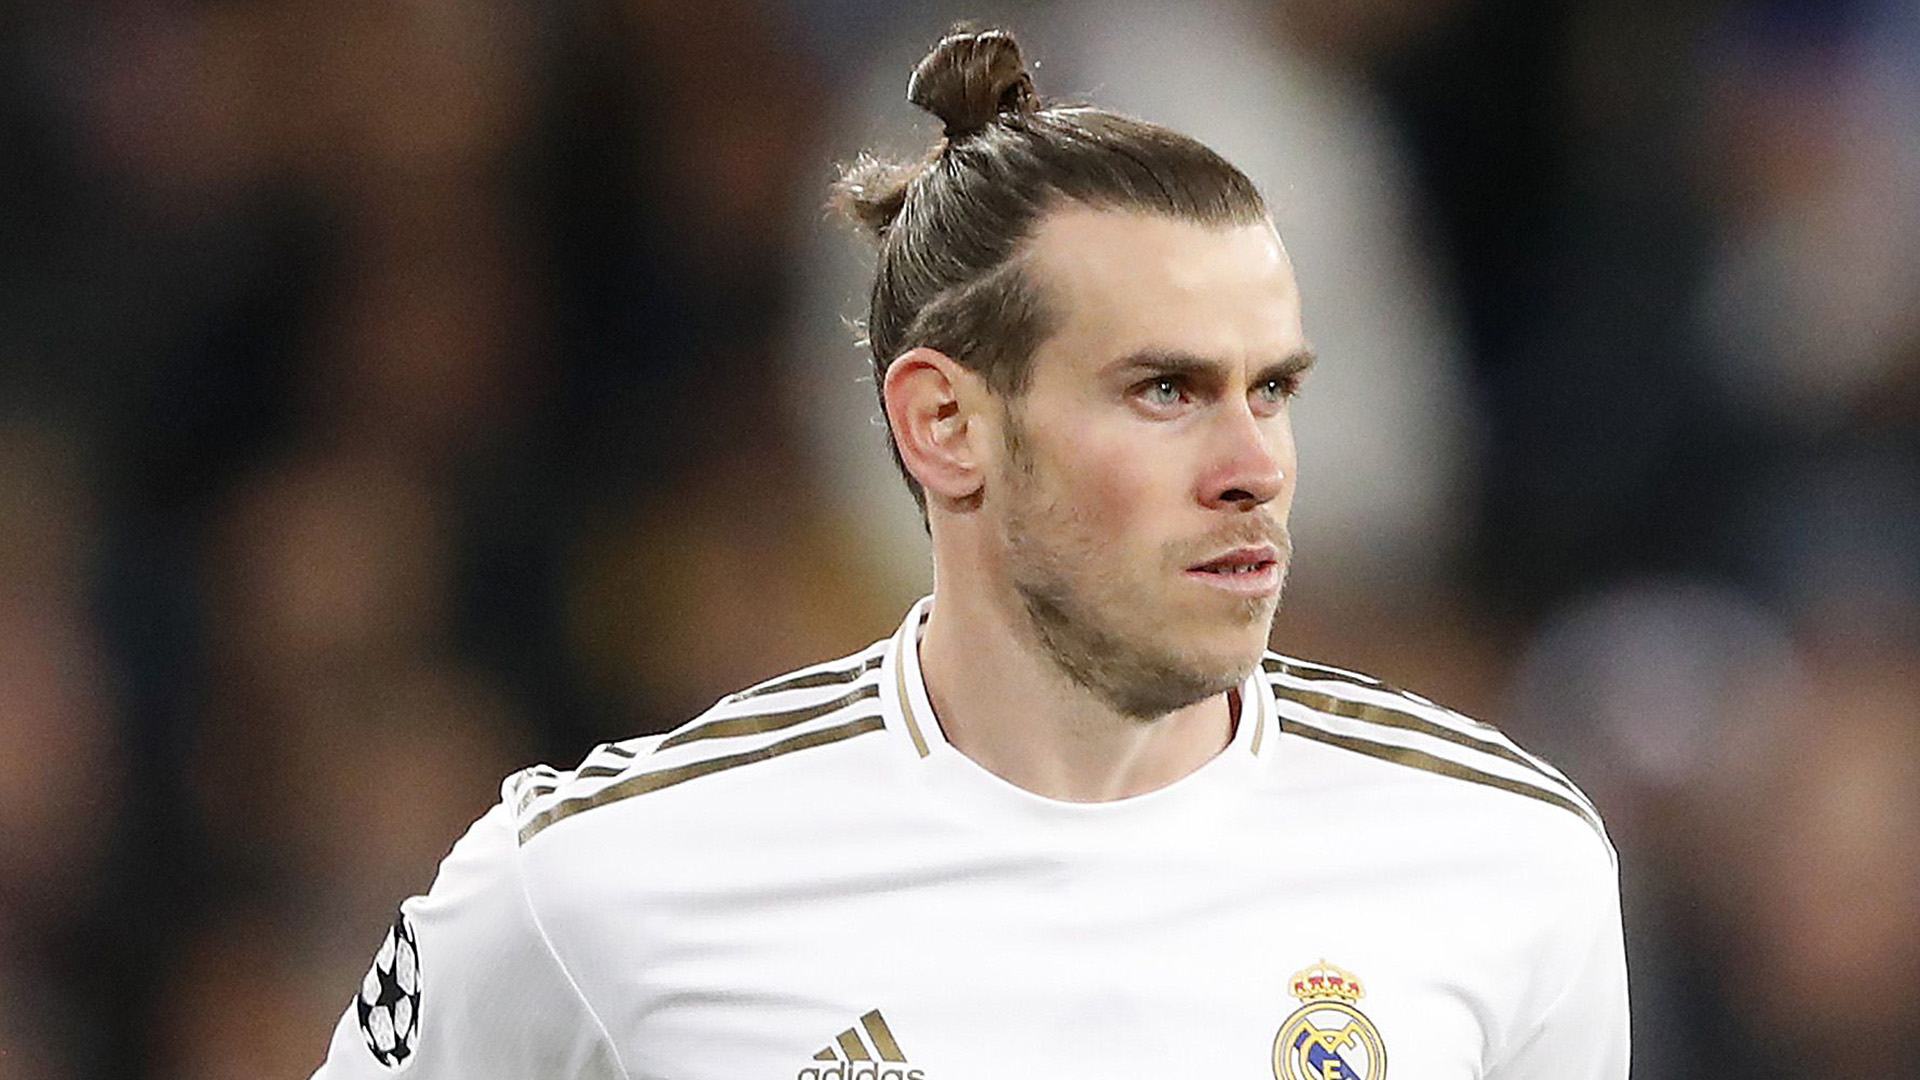 OFFICIEL - Gareth Bale fait son retour à Tottenham